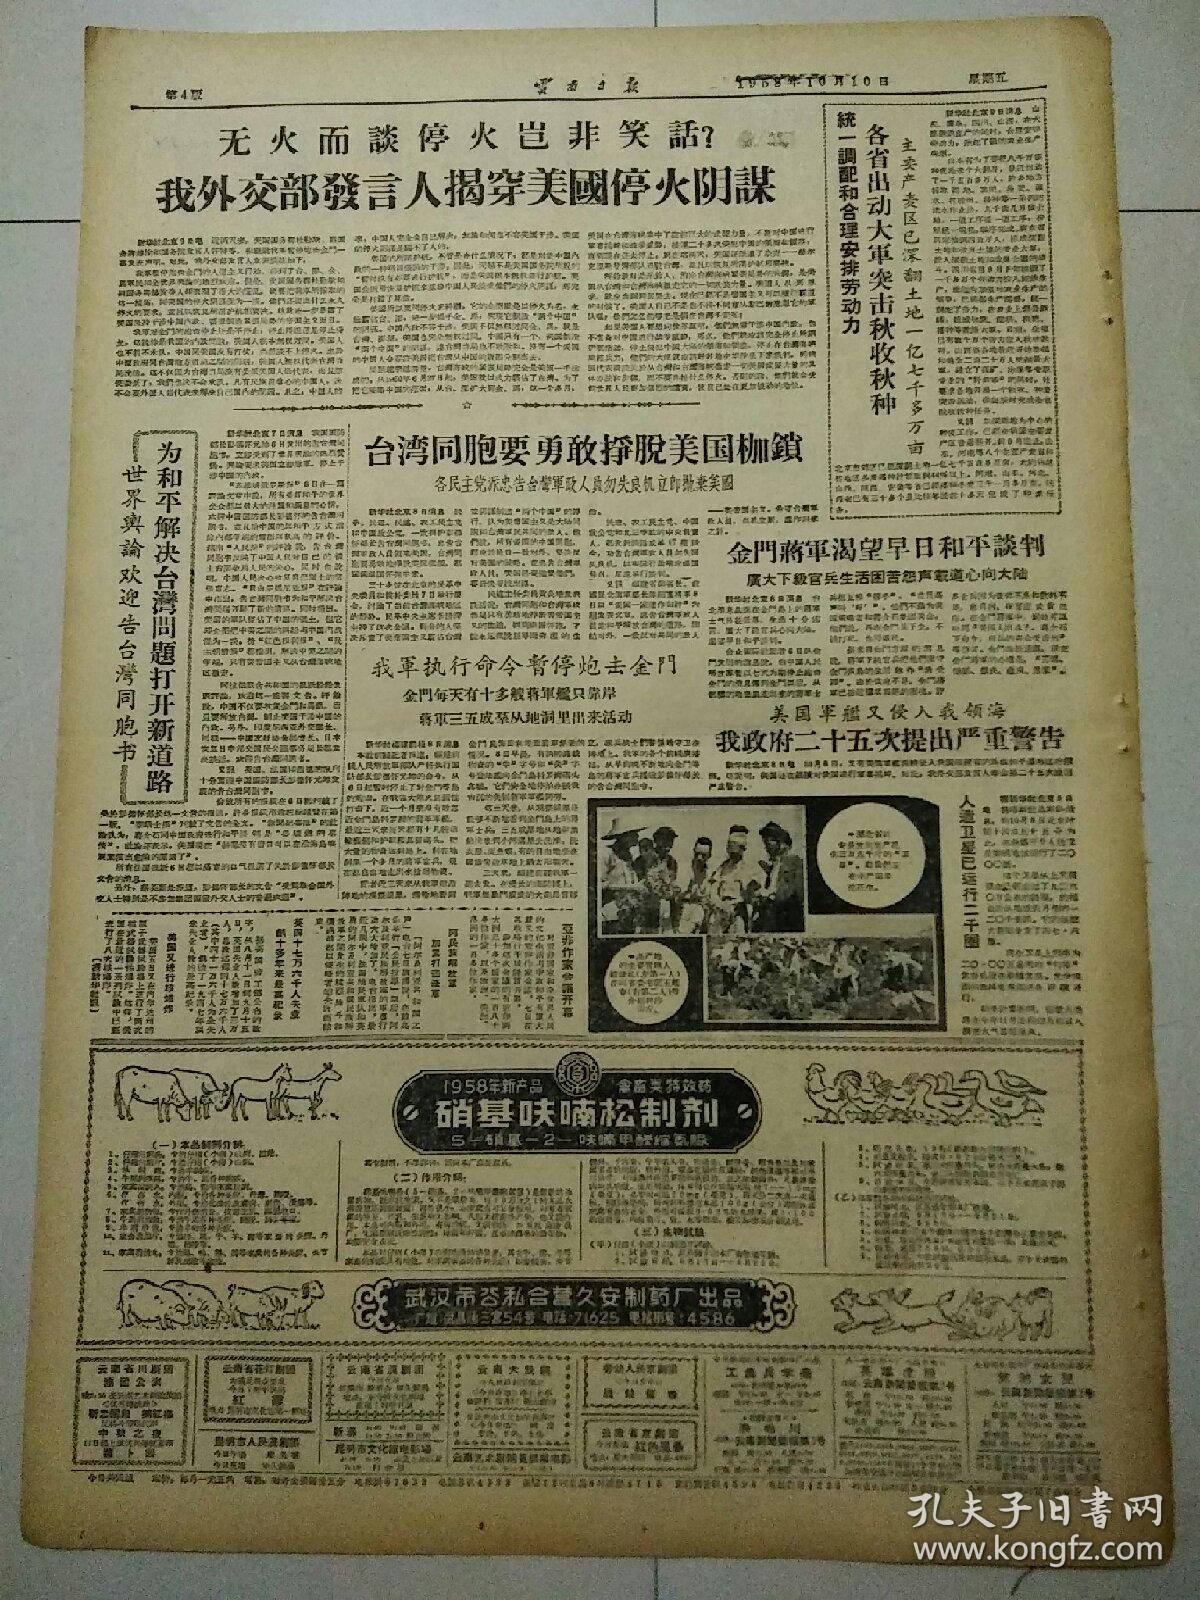 生日报云南日报1958年10月10日（4开四版）
全省总动员猛攻钢铁铜；
奔向共产主义；